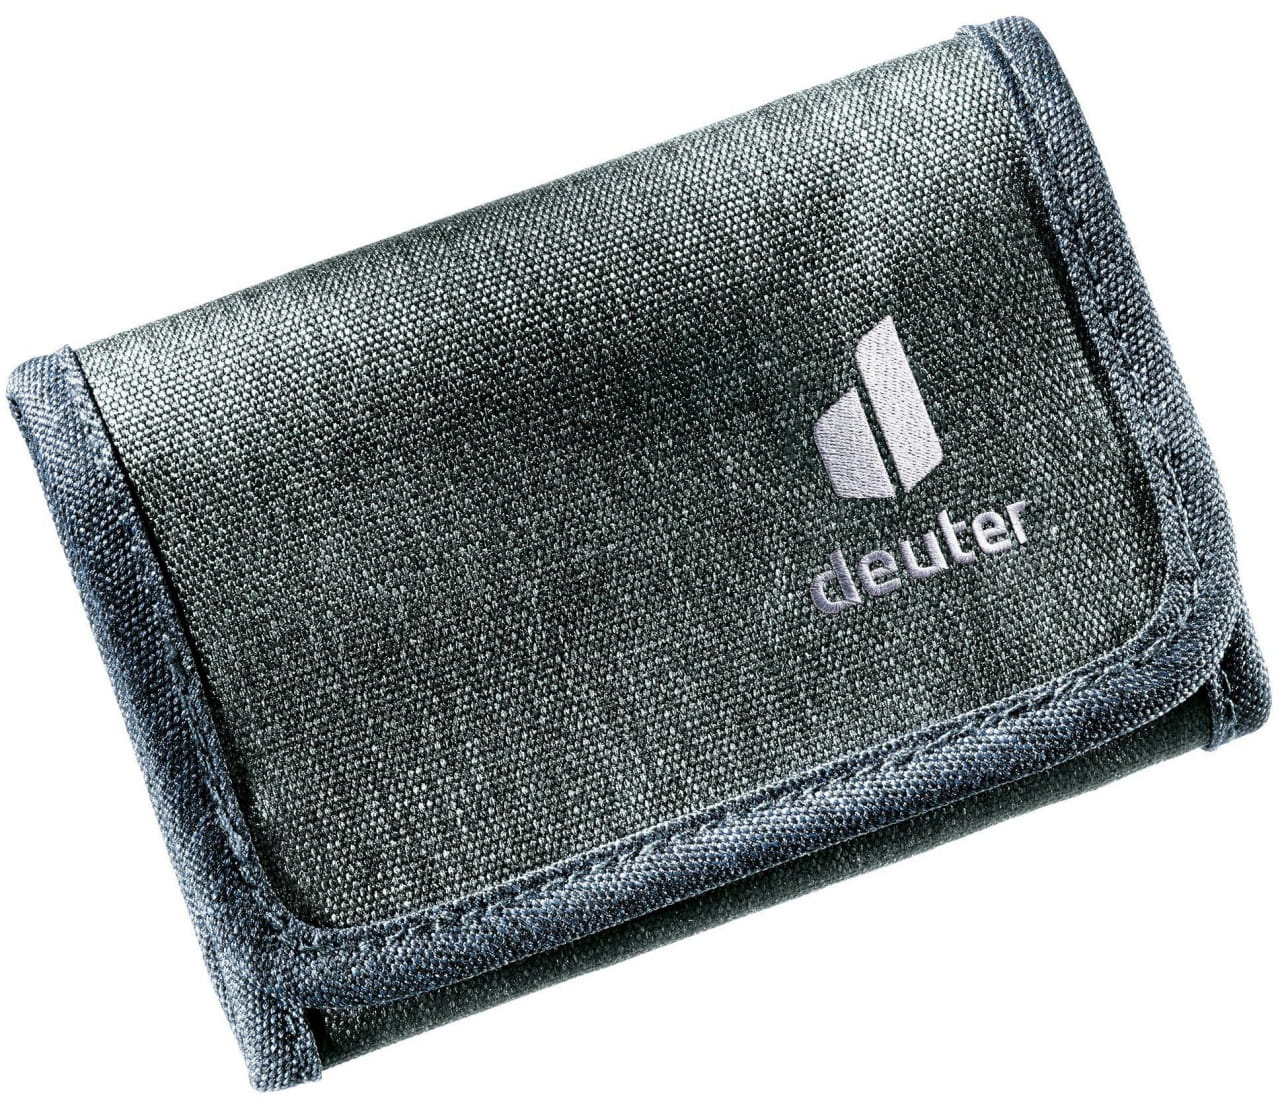 Pénztárca Deuter Travel Wallet